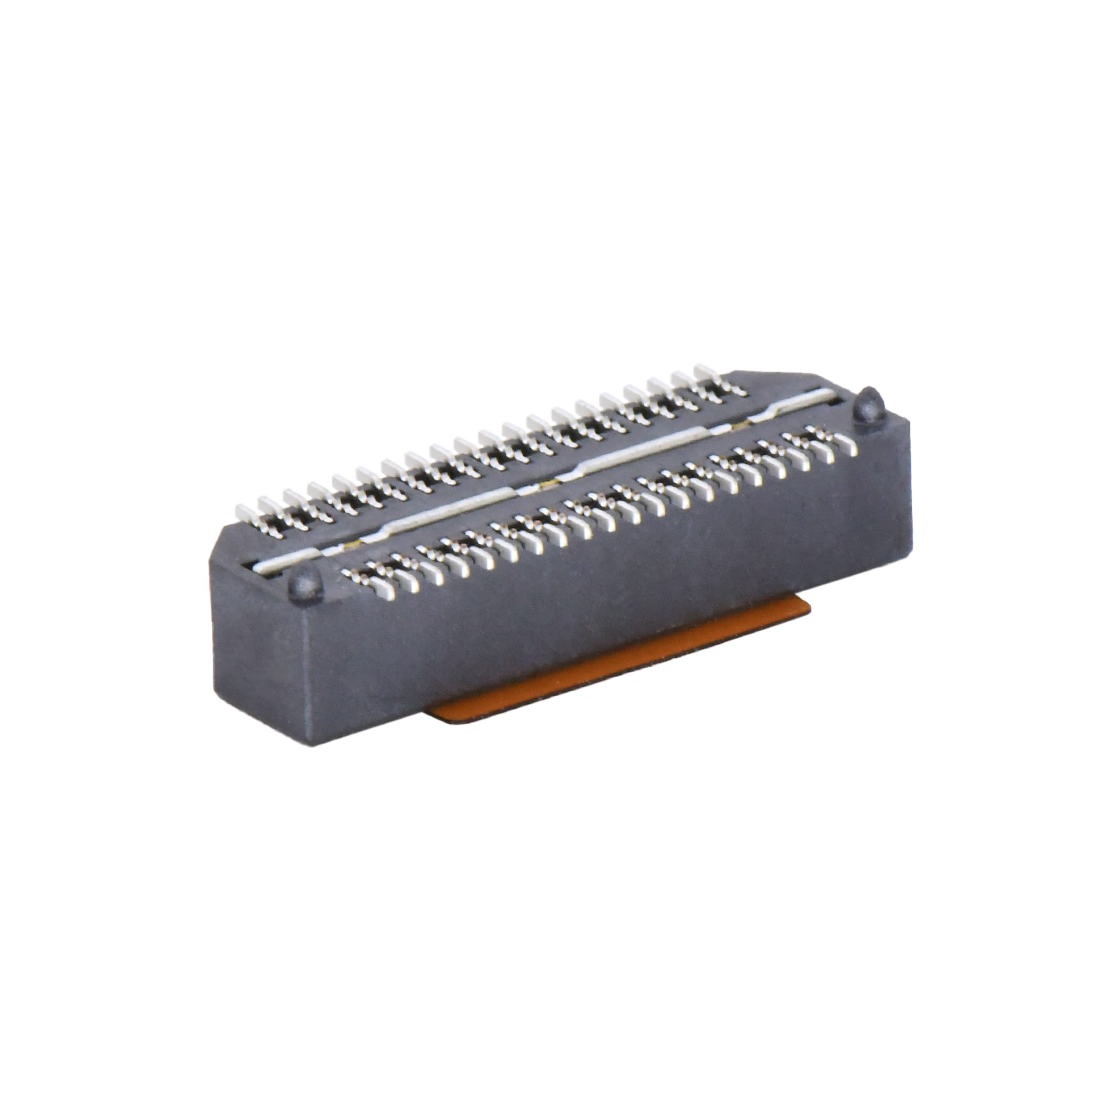 B0809板对板连接器Pitch 0.8 H4.2mm单槽双排 SMT型公座（高速传输15G)